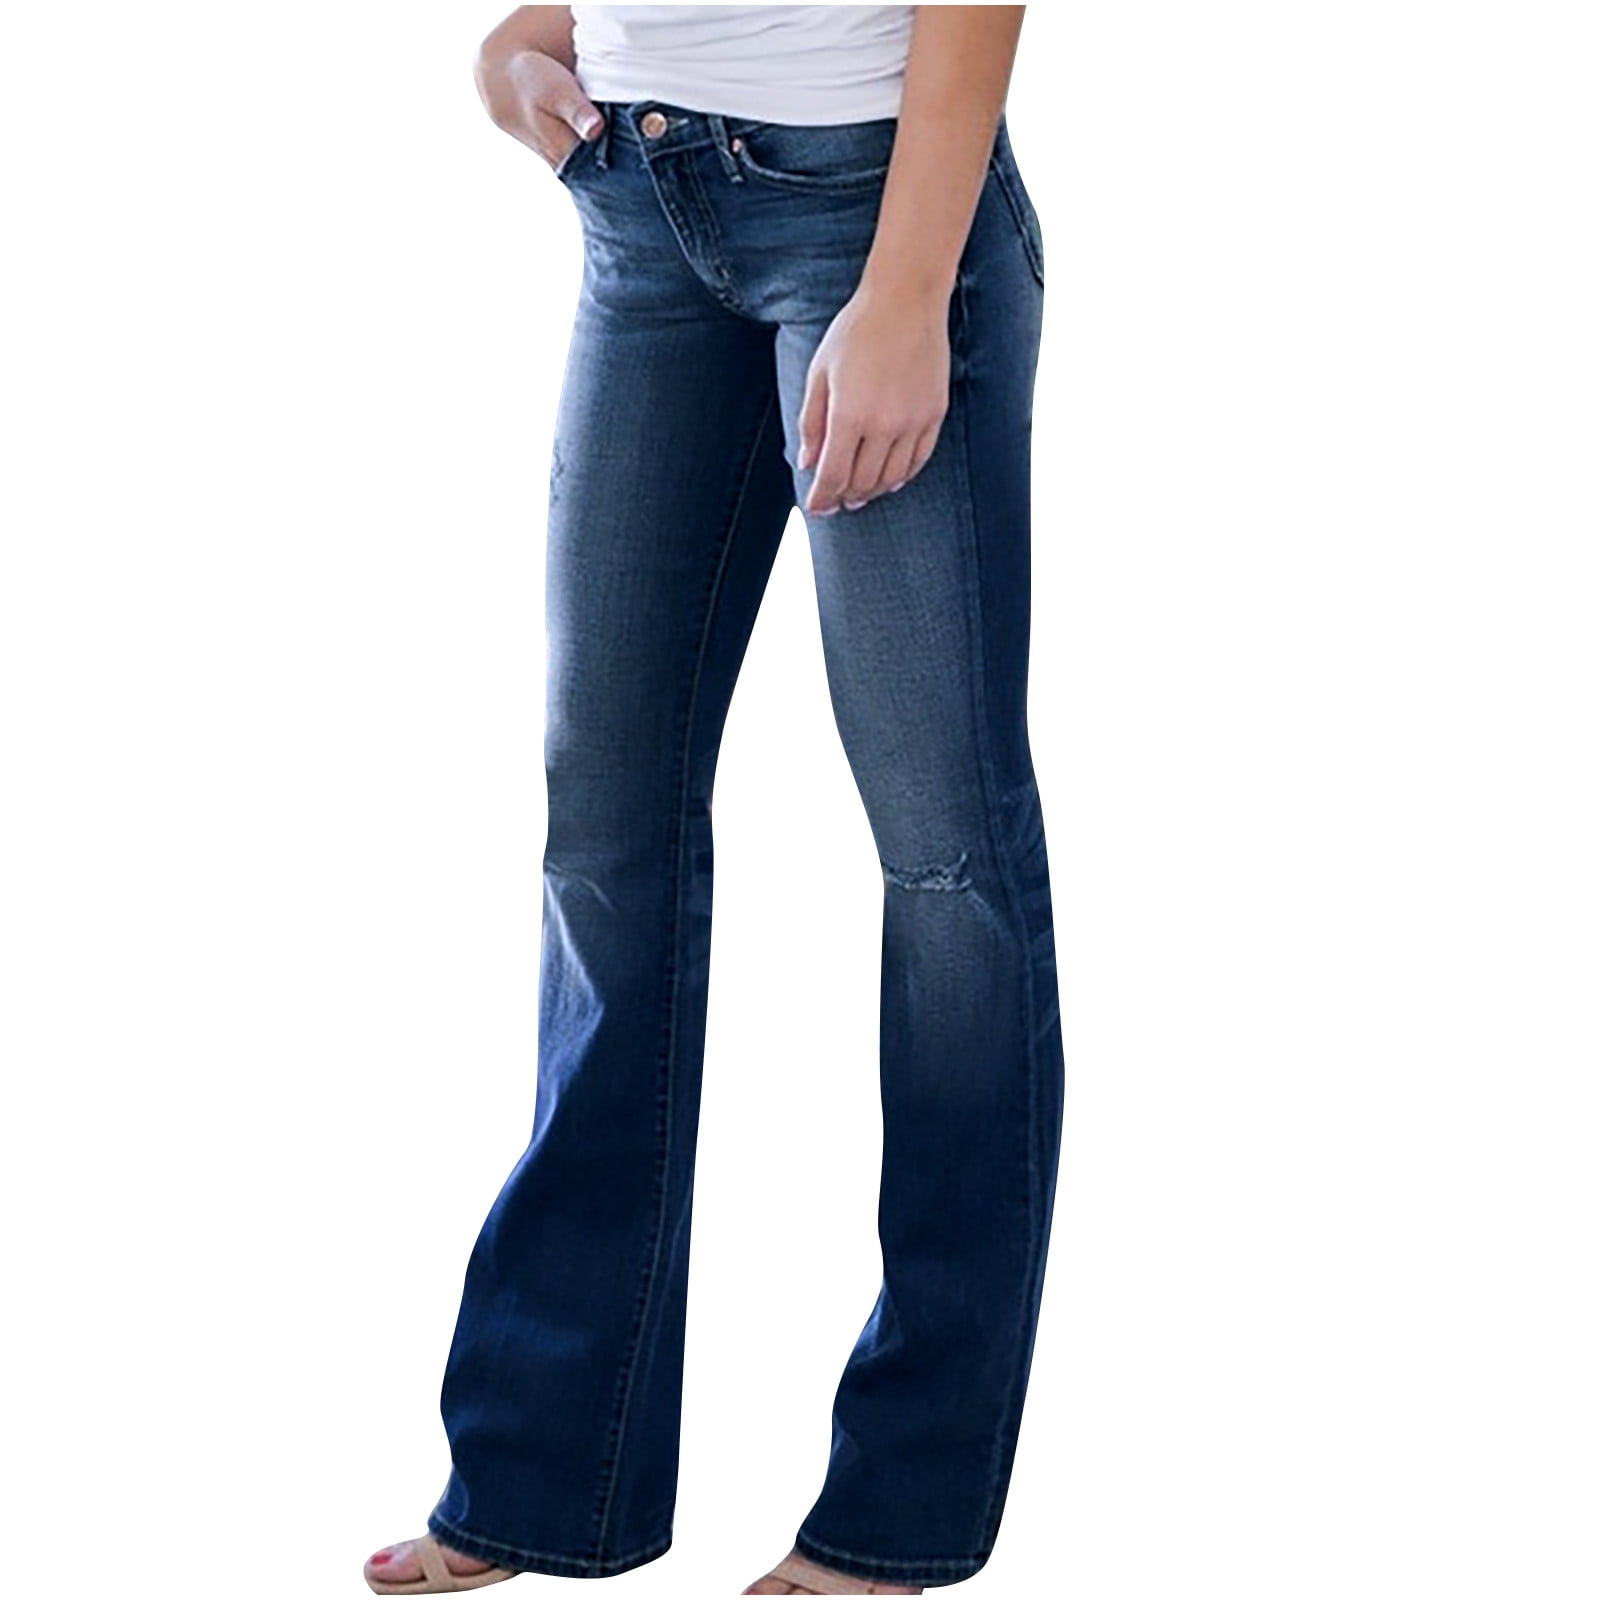 KASSUALLY Women Dark Blue Bell Bottom Jeans